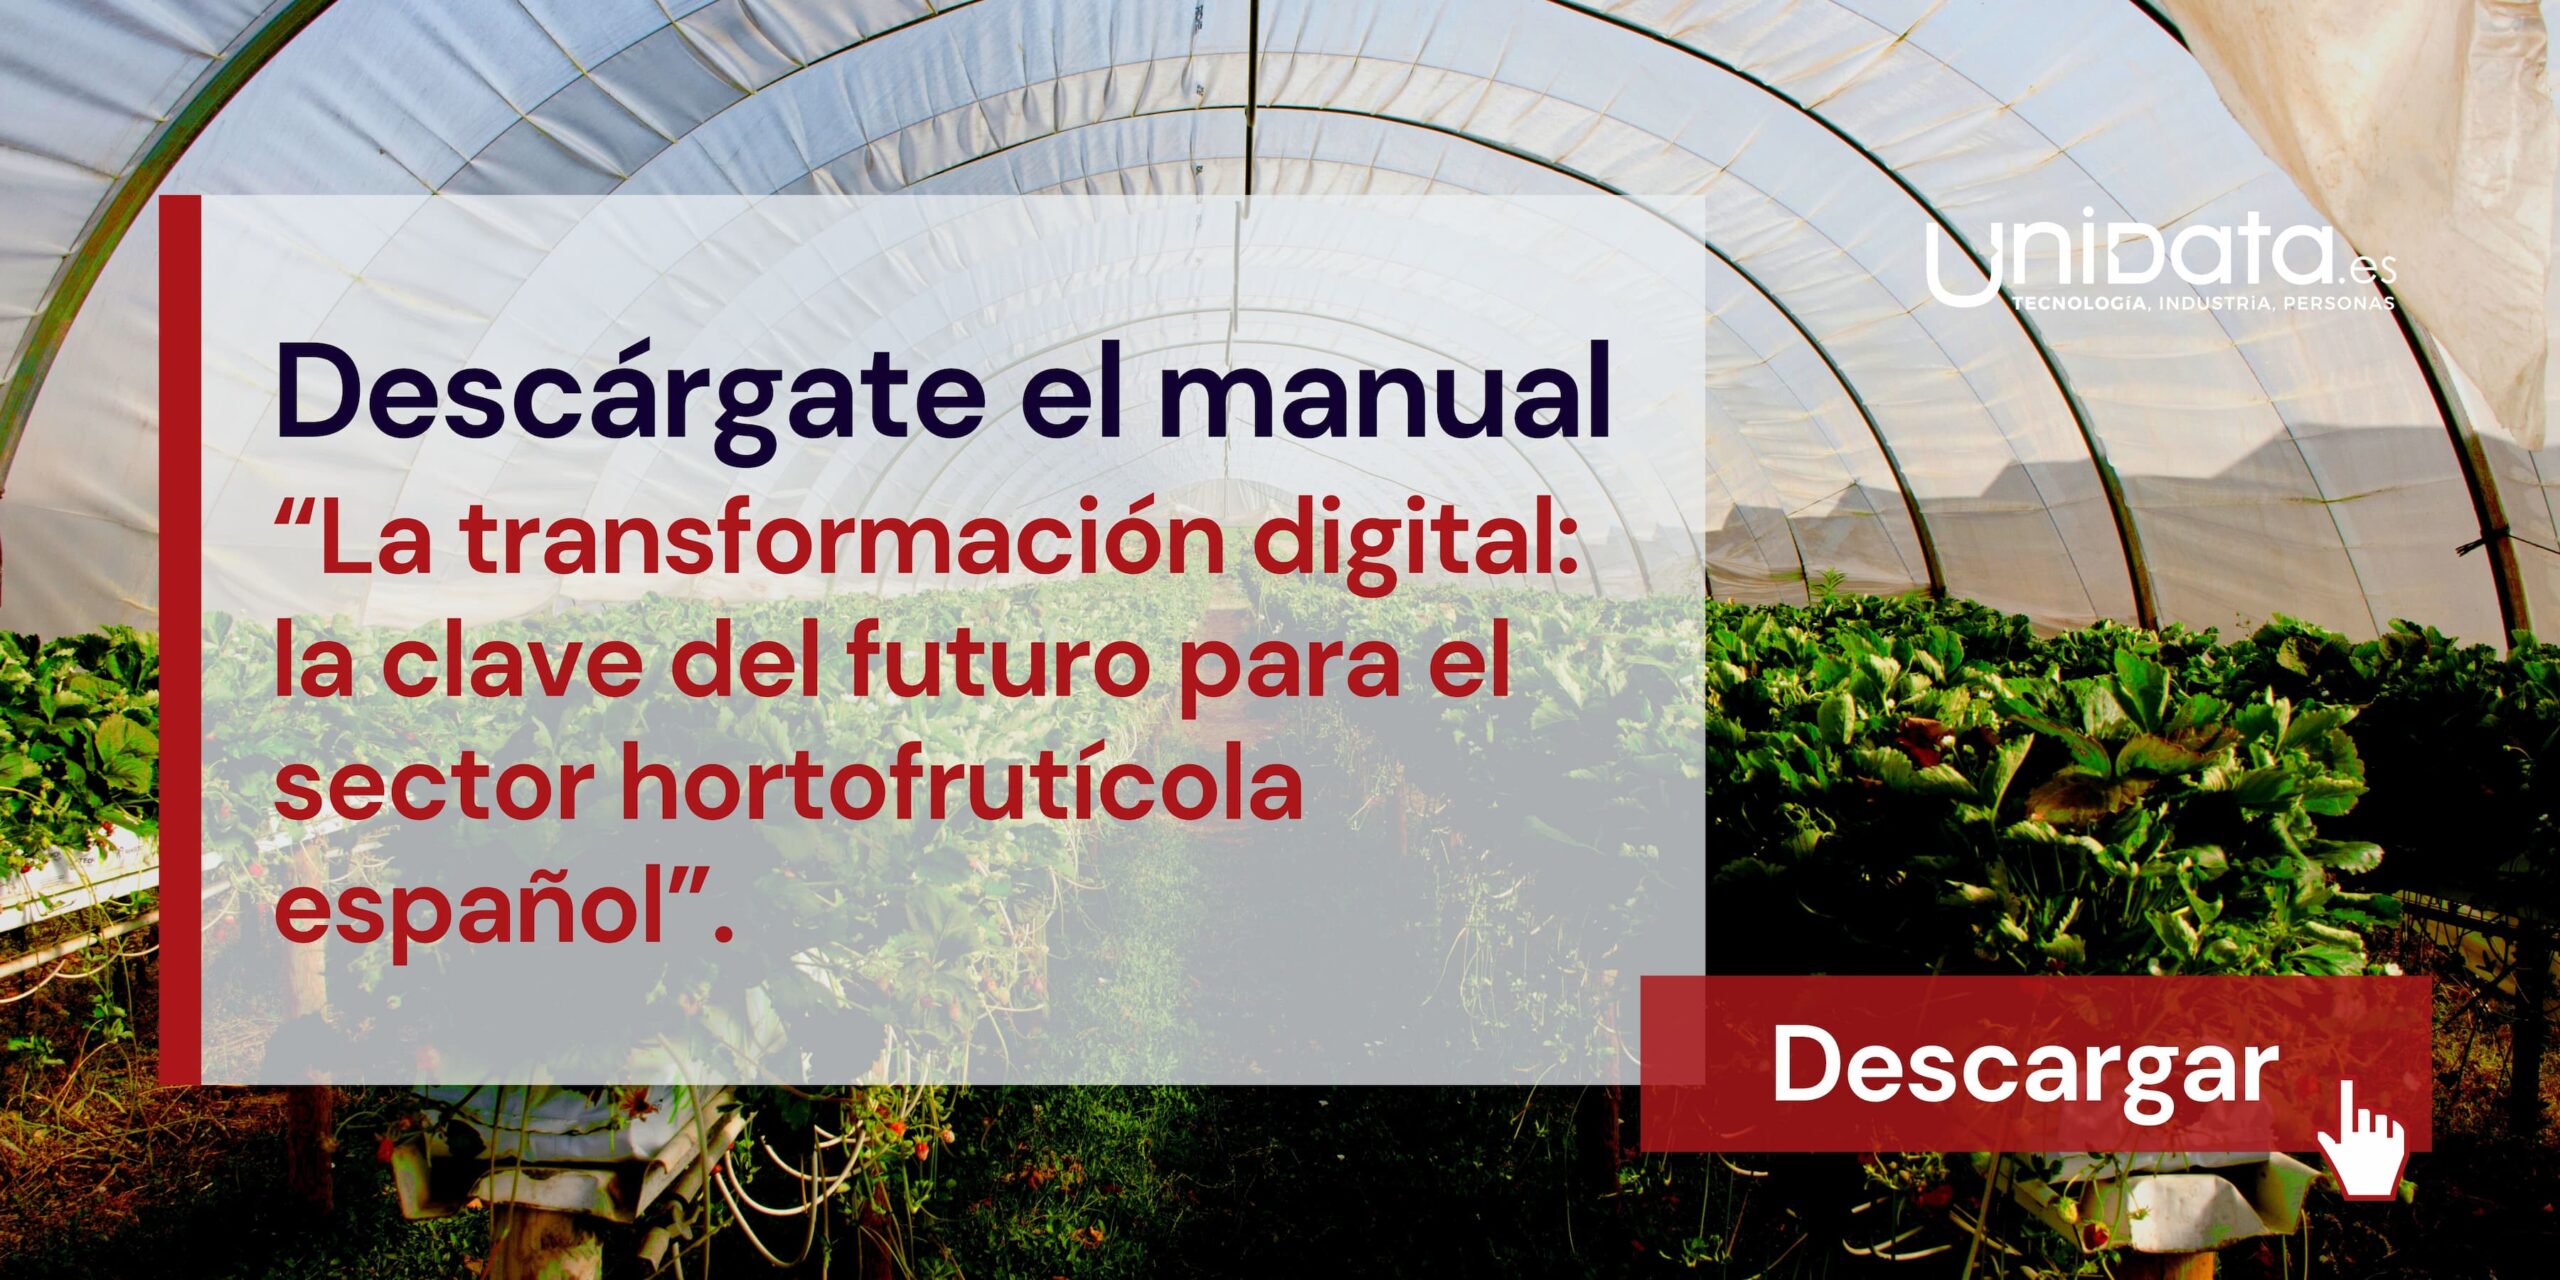 La transformación digital: la clave del futuro para el sector hortofrutícola español